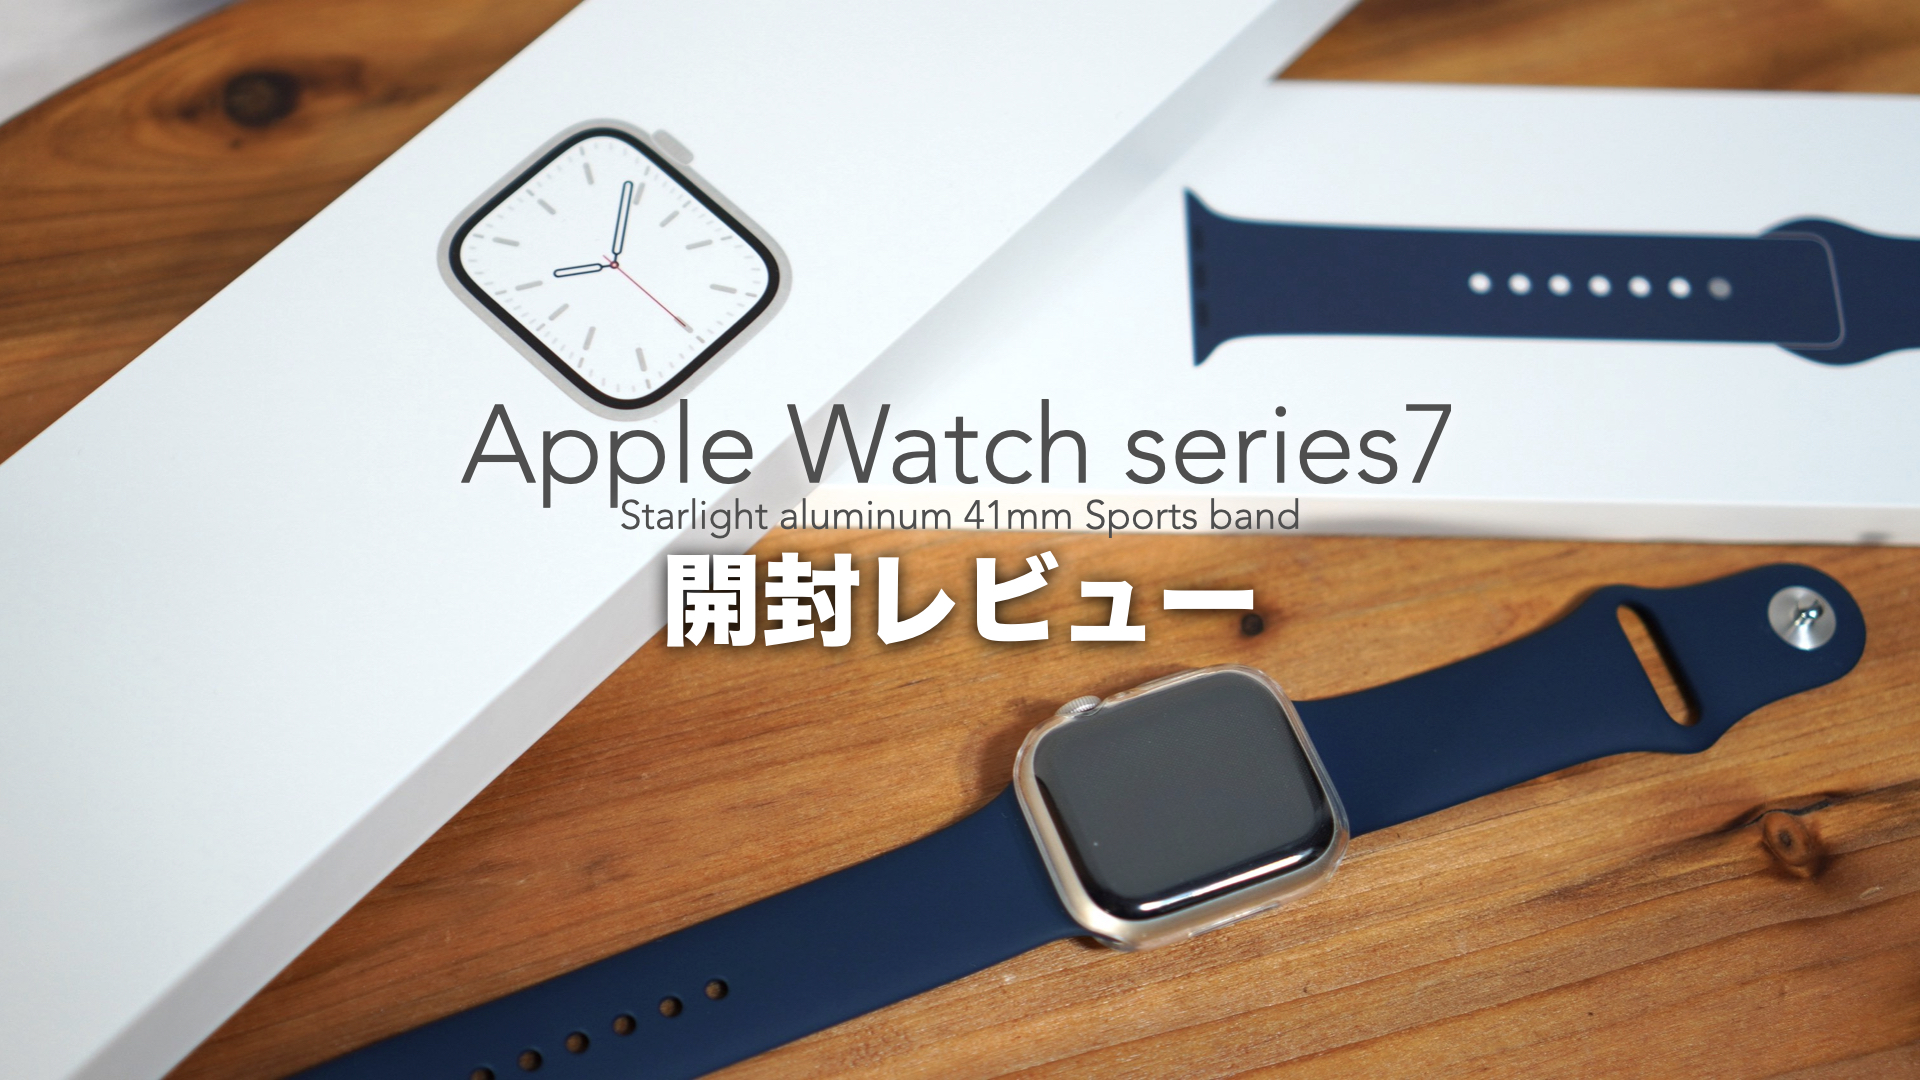 初めてのアップルウォッチ。「Series7」を開封レビューしました。【Apple Watch/41mm/スターライトアルミニウム/スポーツ